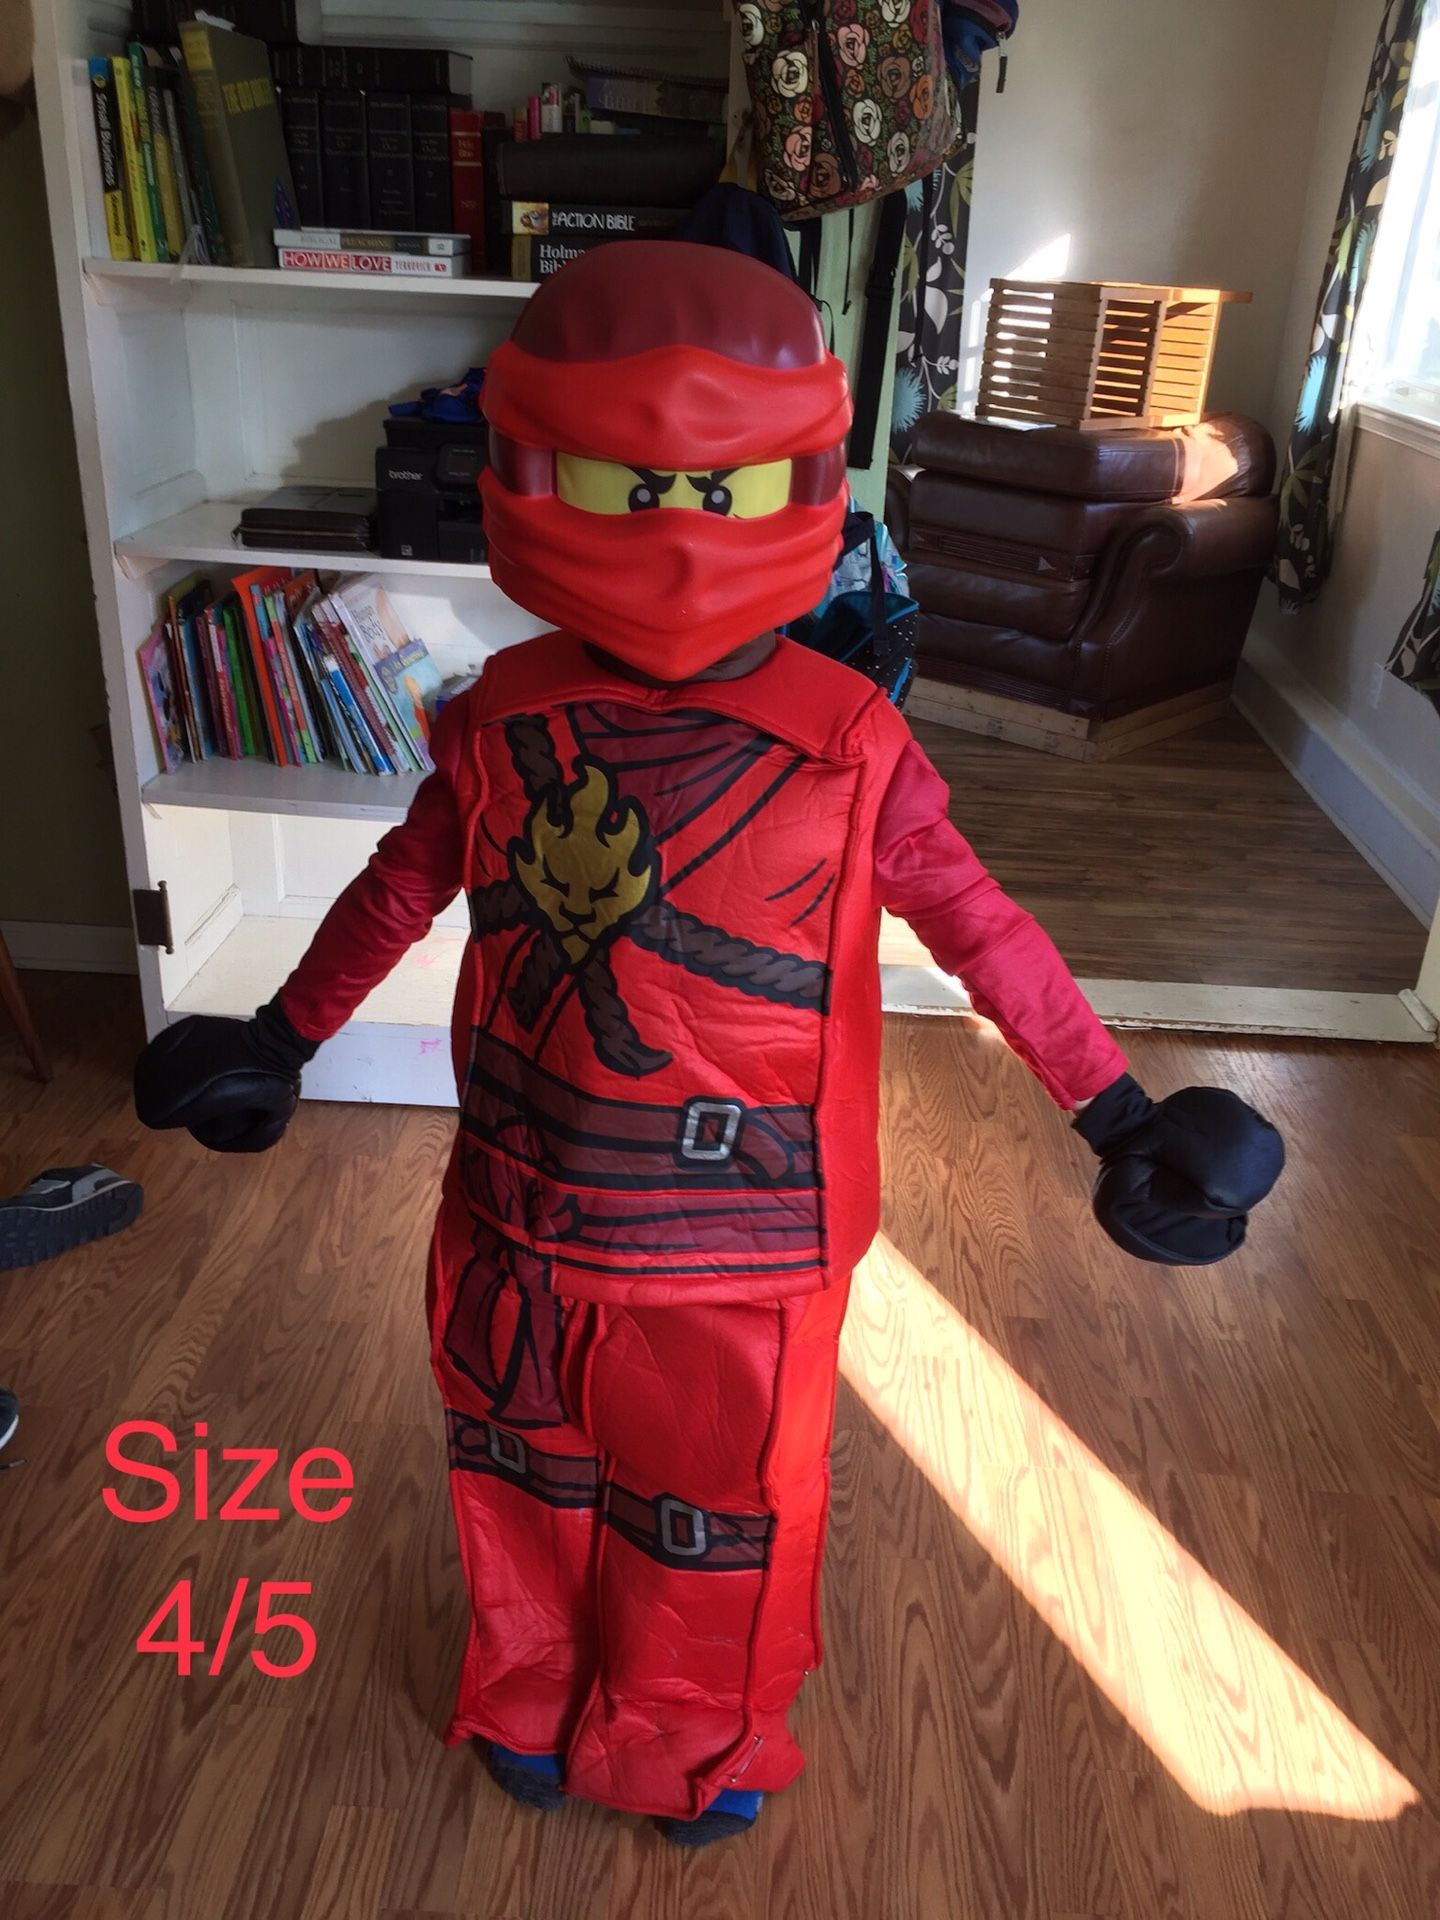 Lego Ninjago Ninja Lego costume, size 4/5